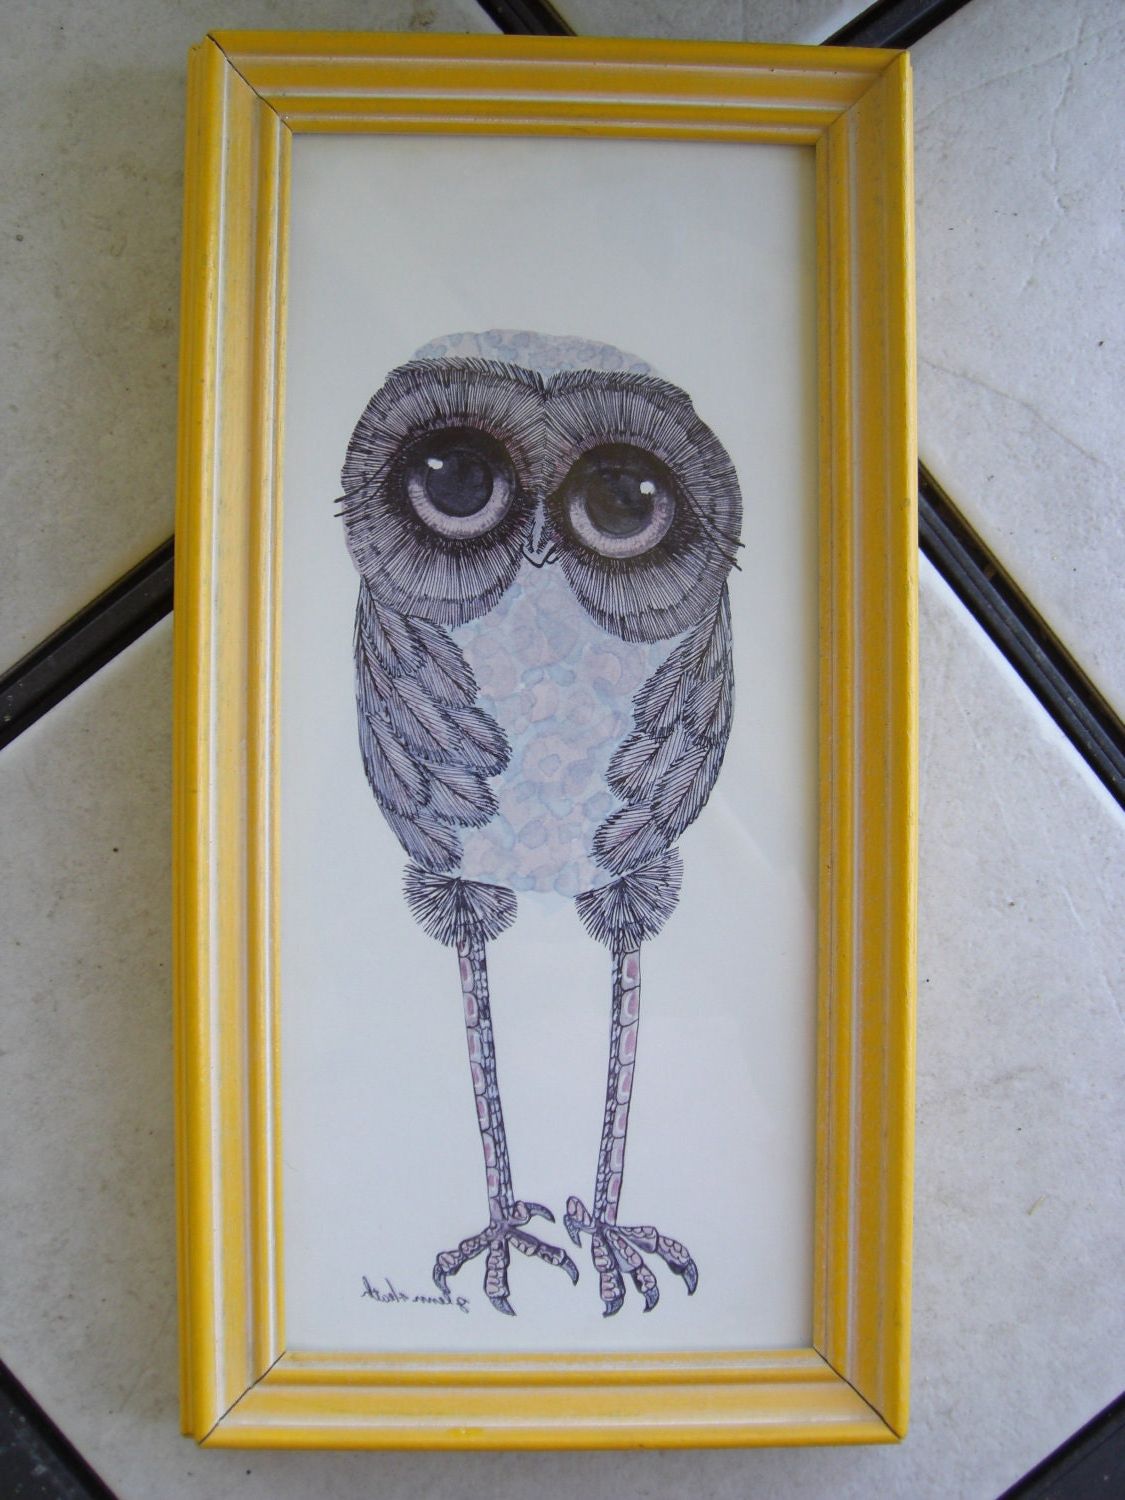 The Owl Framed Art Prints Intended For Current Framed Glenn Heath Owl Print (View 9 of 20)